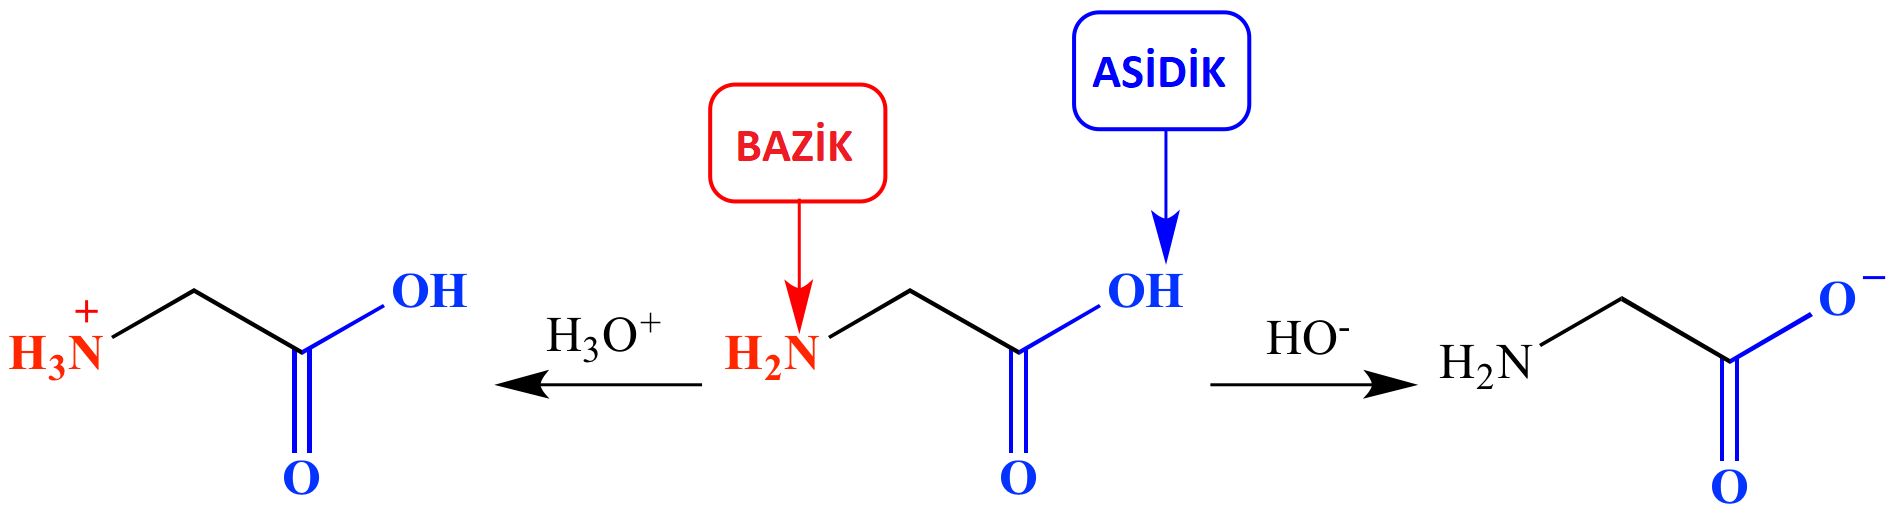 aminoasitamfoterik